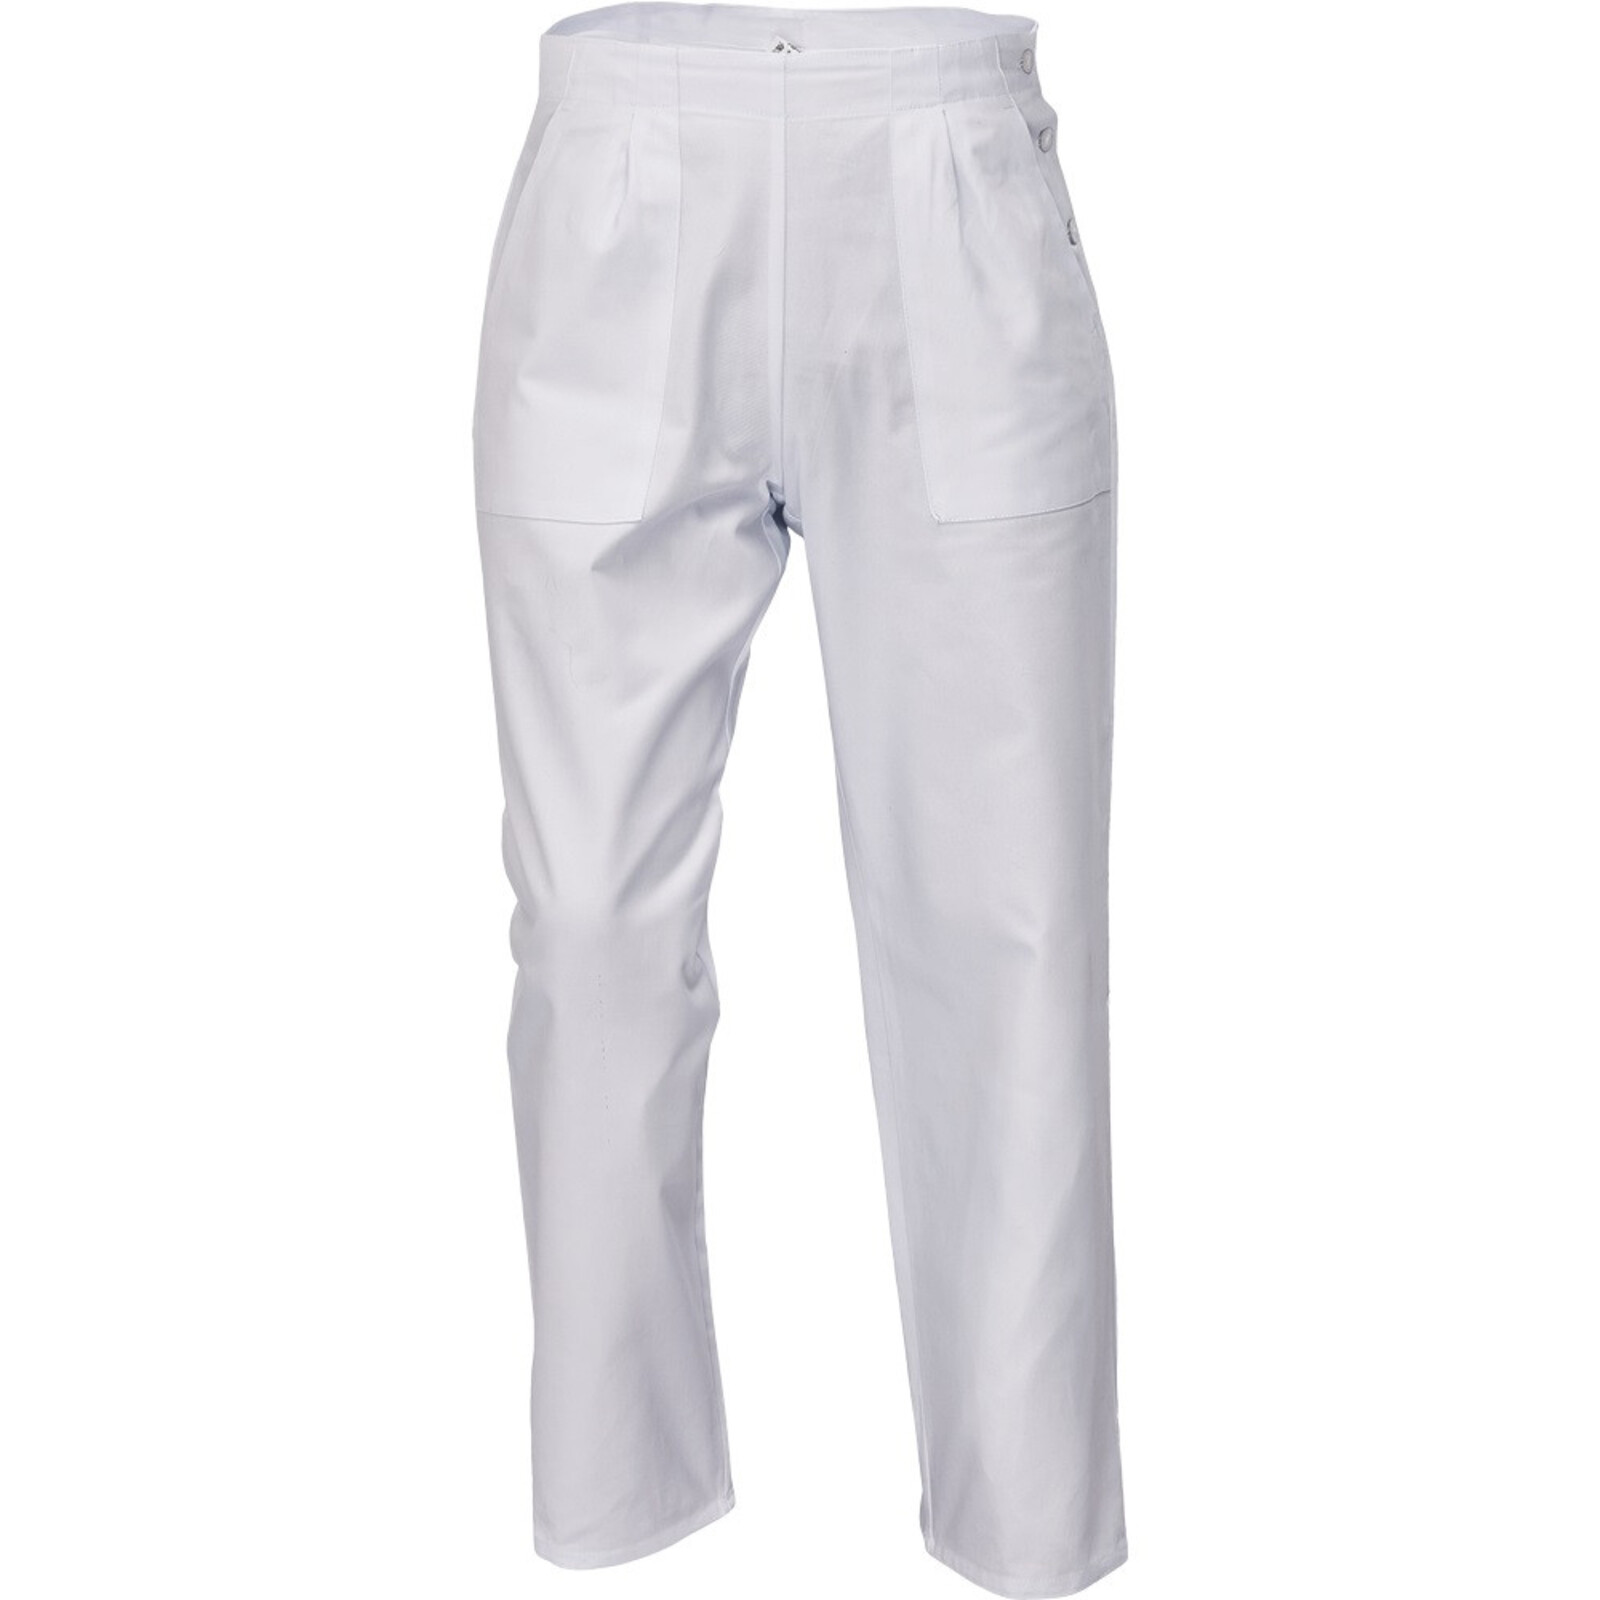 Dámske biele nohavice Apus Lady - veľkosť: 58